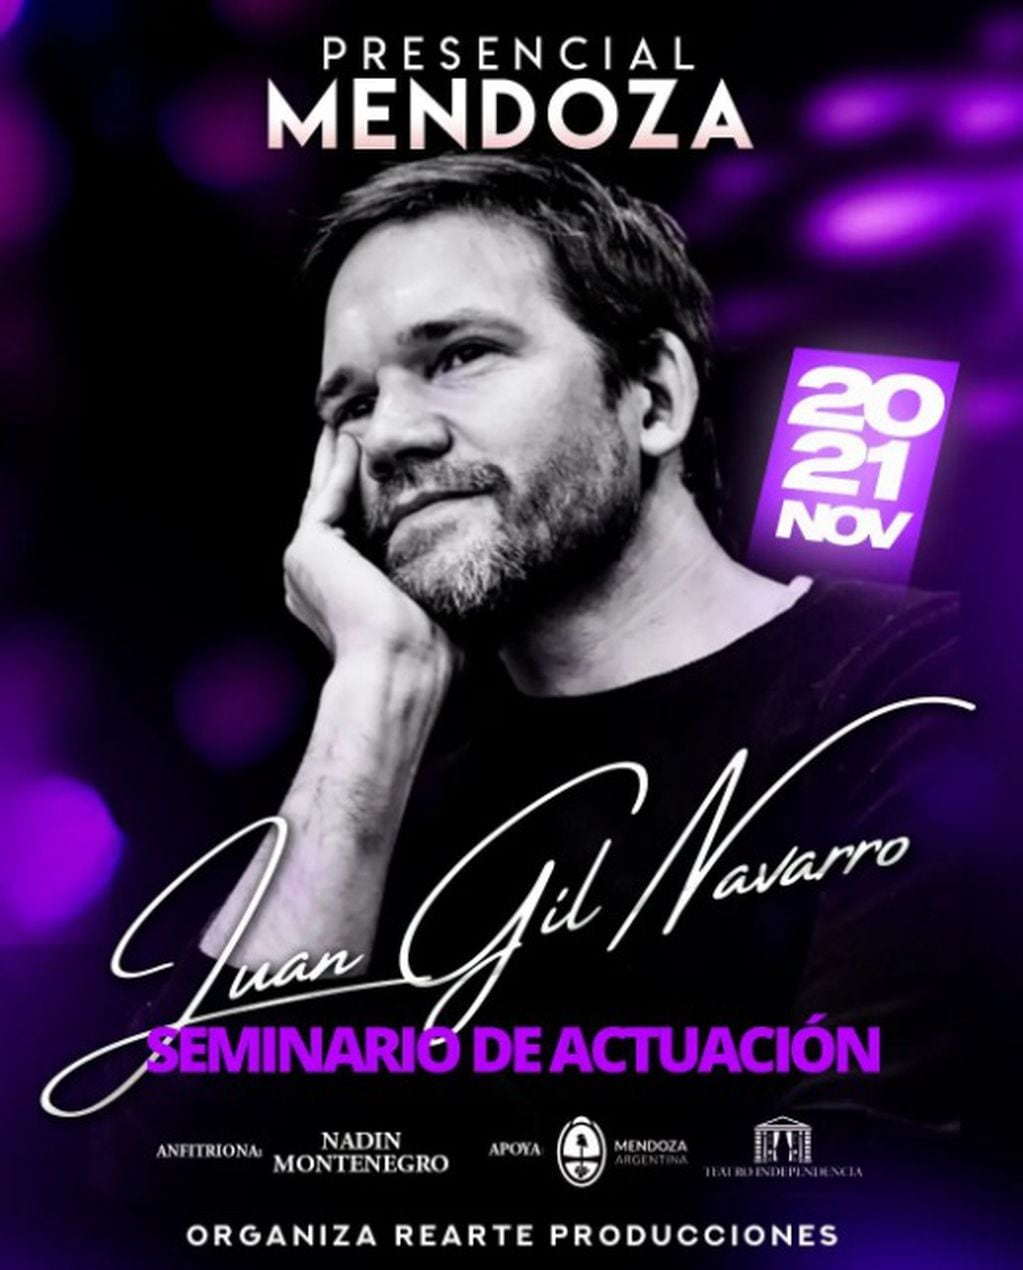 Seminario de actuación de Juan Gil Navarro en Mendoza